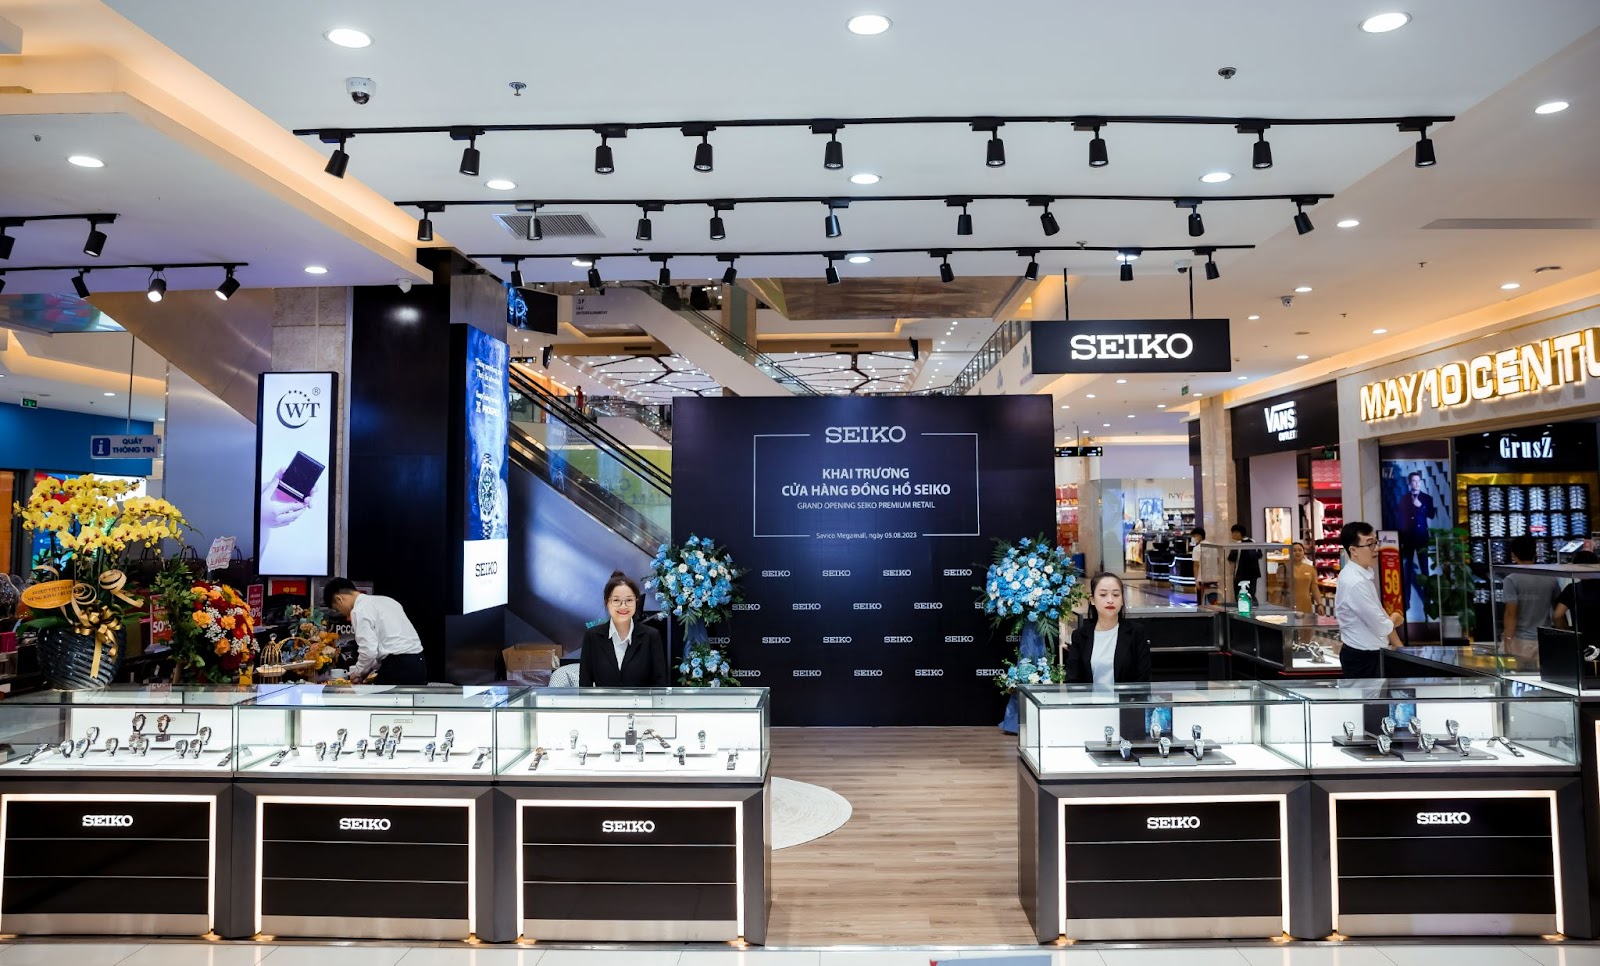 Khai trương cửa hàng đồng hồ Seiko Mono Brand chính hãng tại Việt Nam - 1